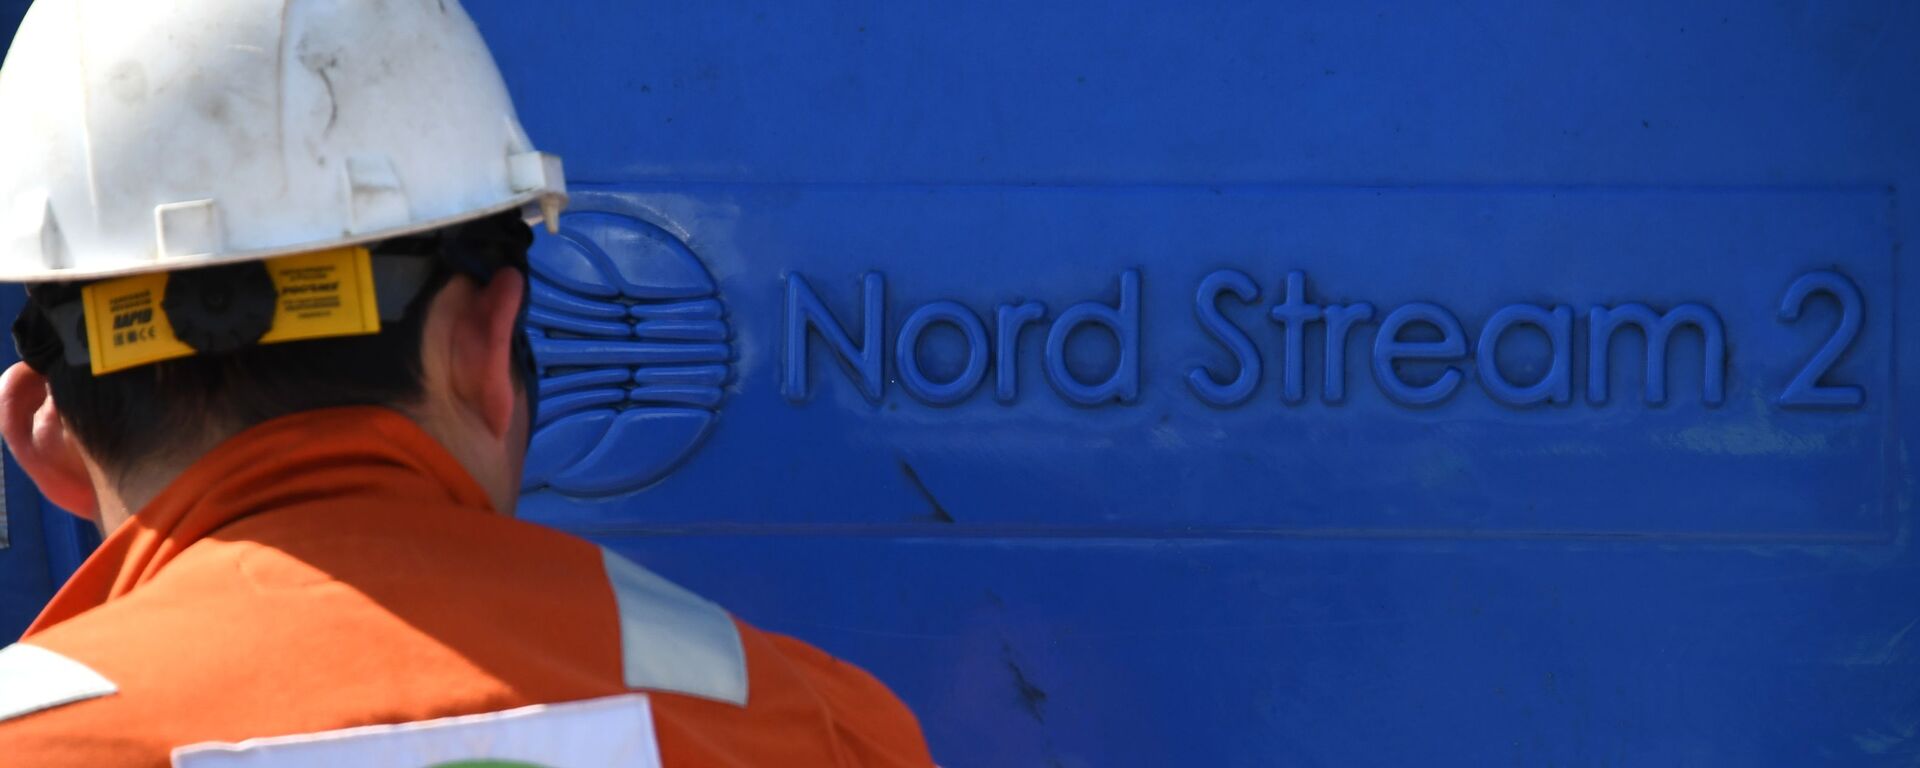 Un empleado invoclucrado en la construcción del gasoducto Nord Stream 2 - Sputnik Mundo, 1920, 01.03.2021